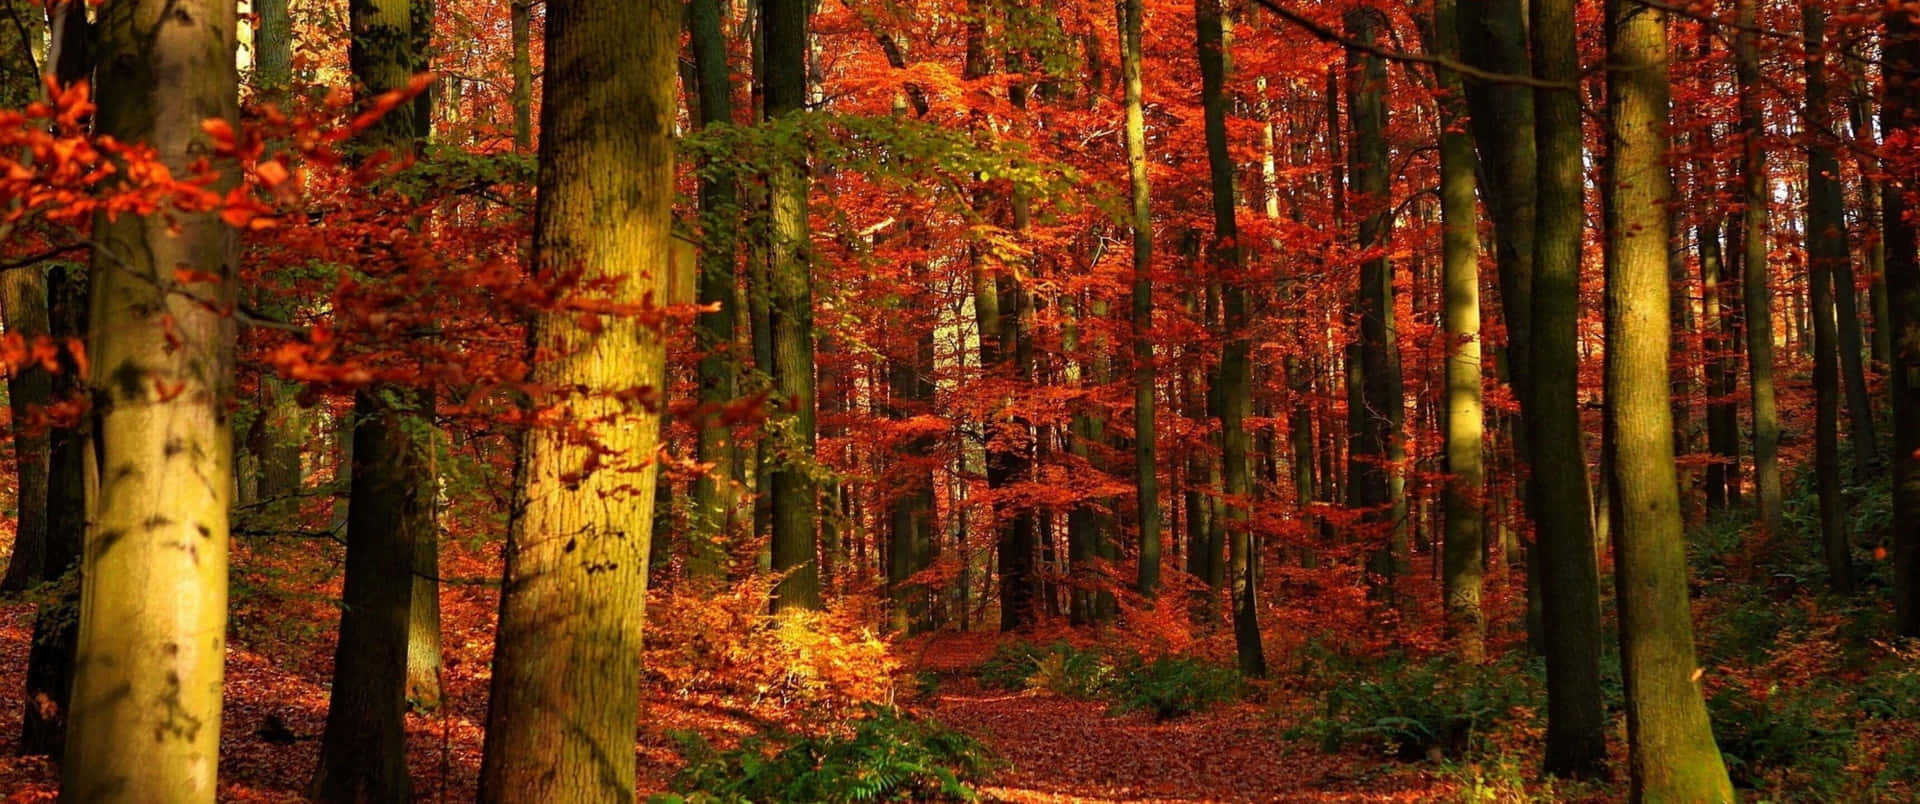 Efteråret kommer i en larm af farver Wallpaper